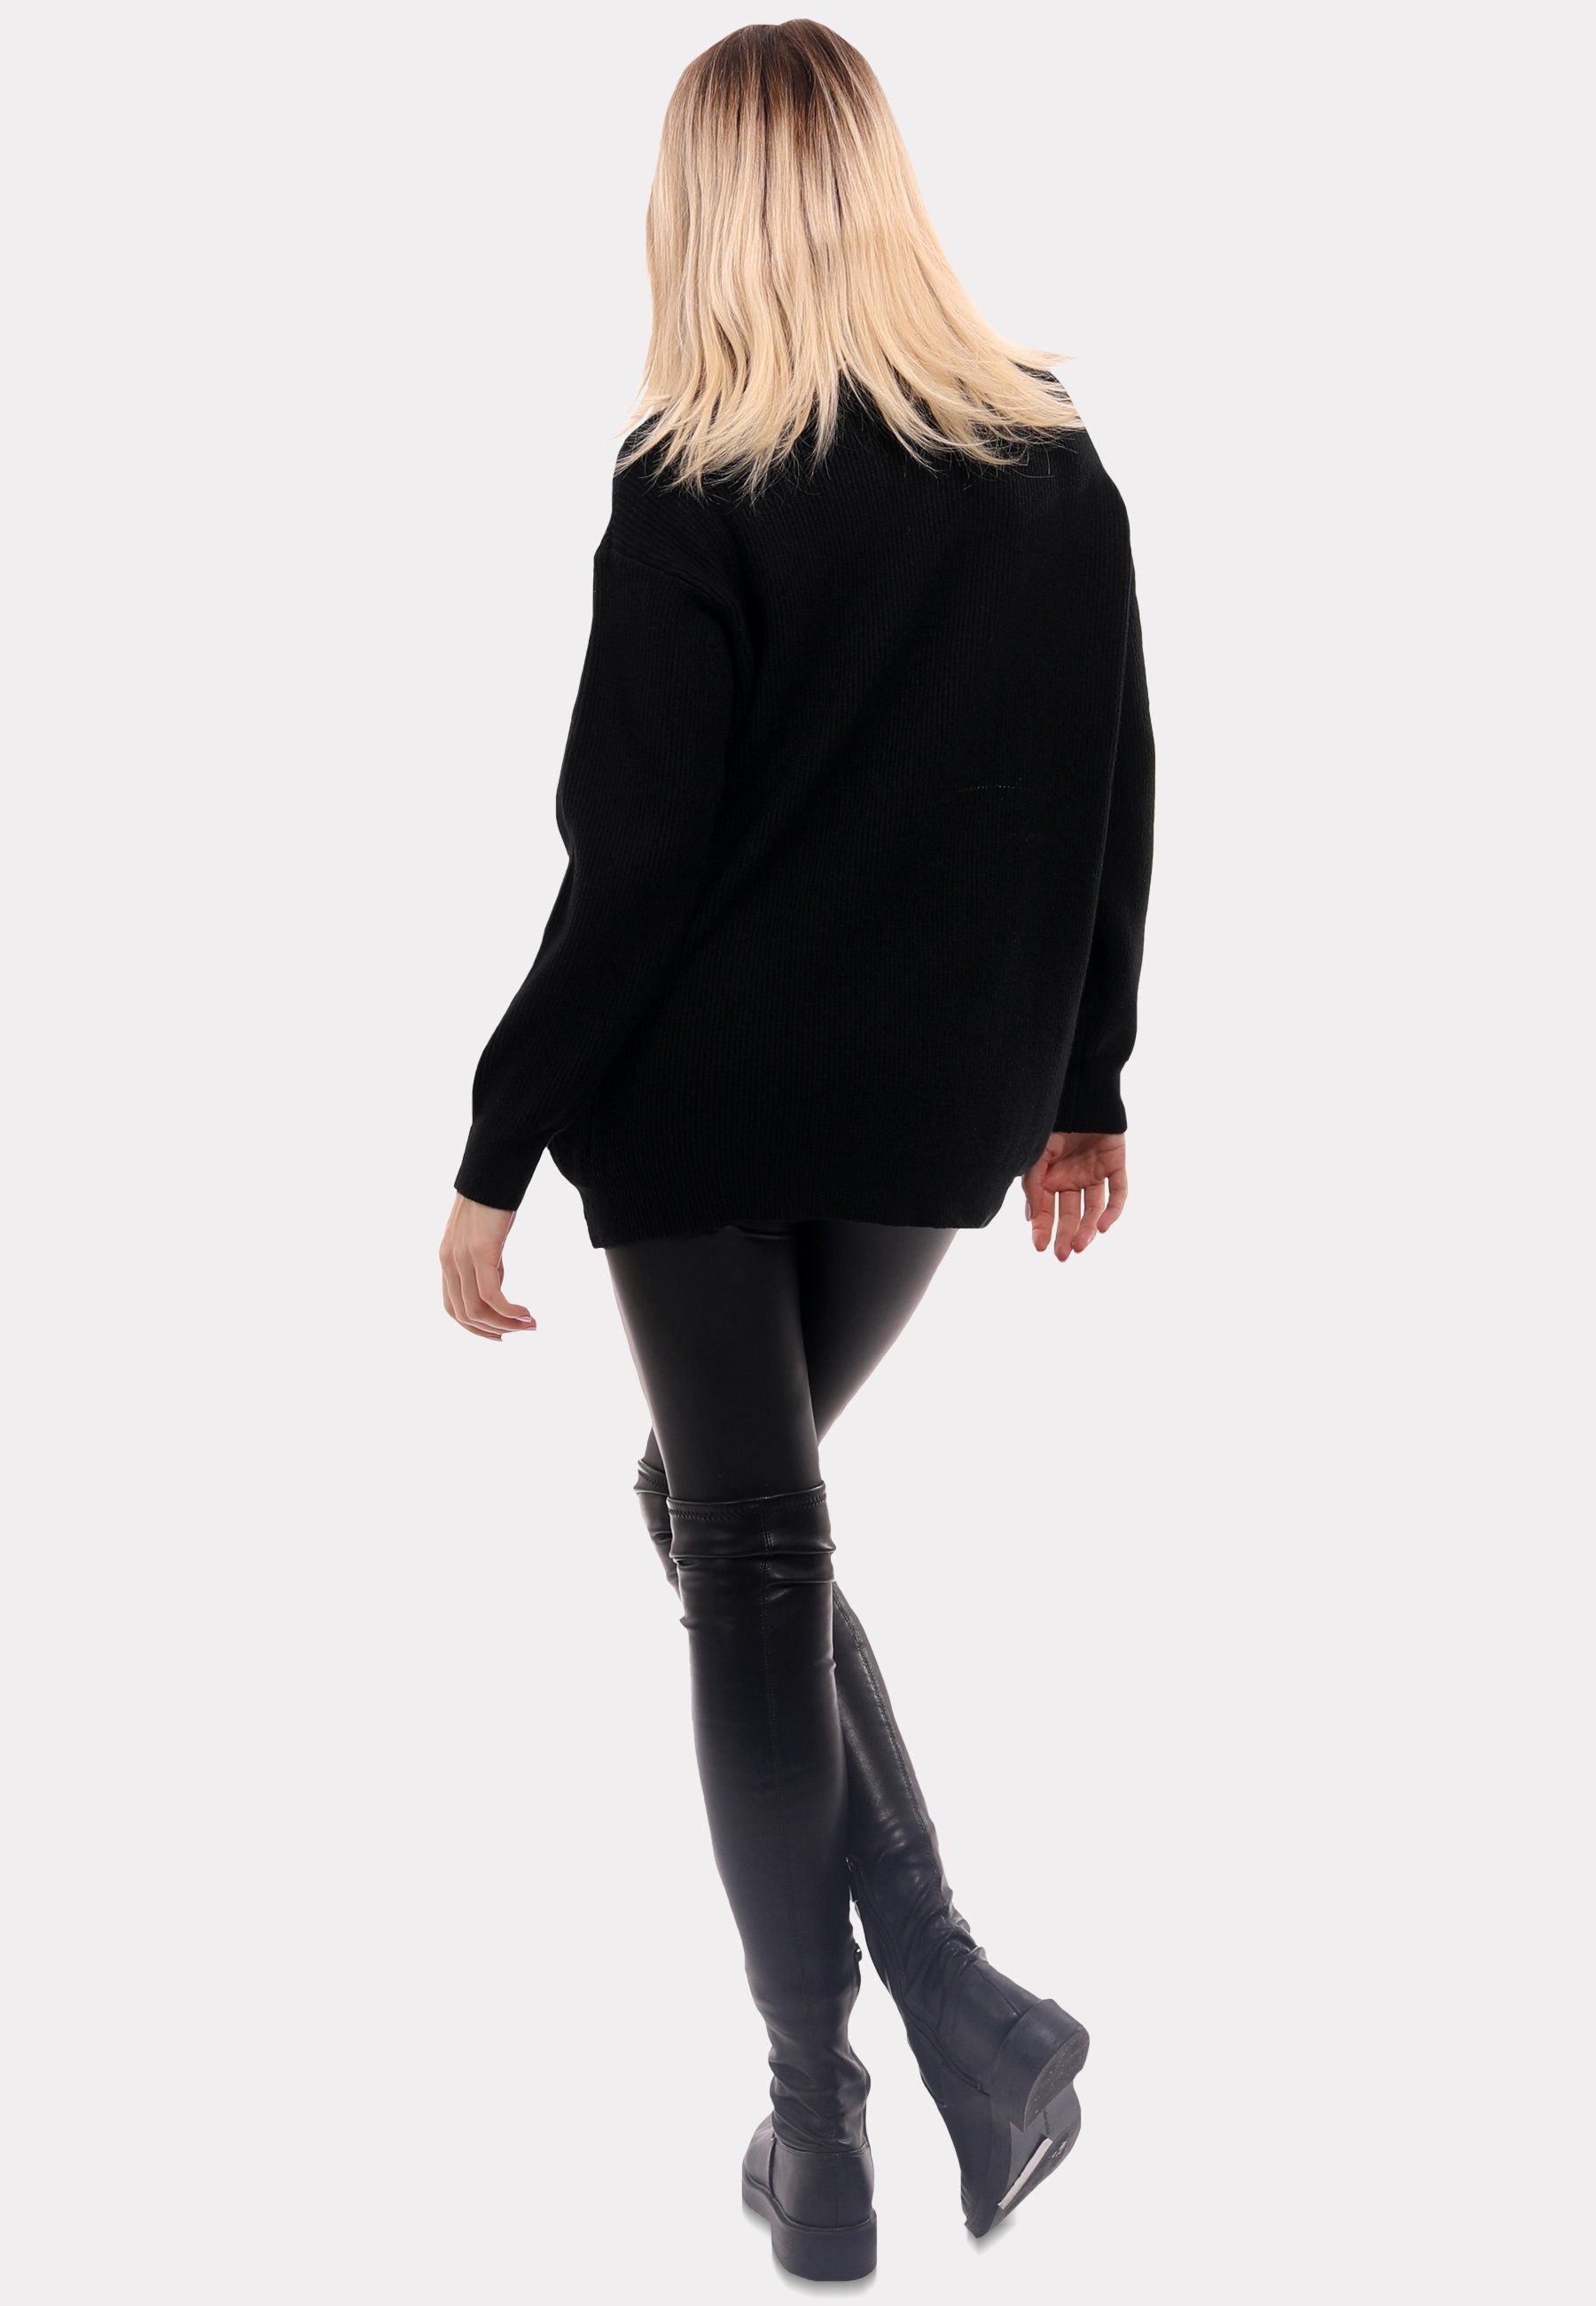 YC Fashion & (1-tlg) in Unifarbe Sweater schwarz Style "Chic " Rollkragenpullover Turtleneck